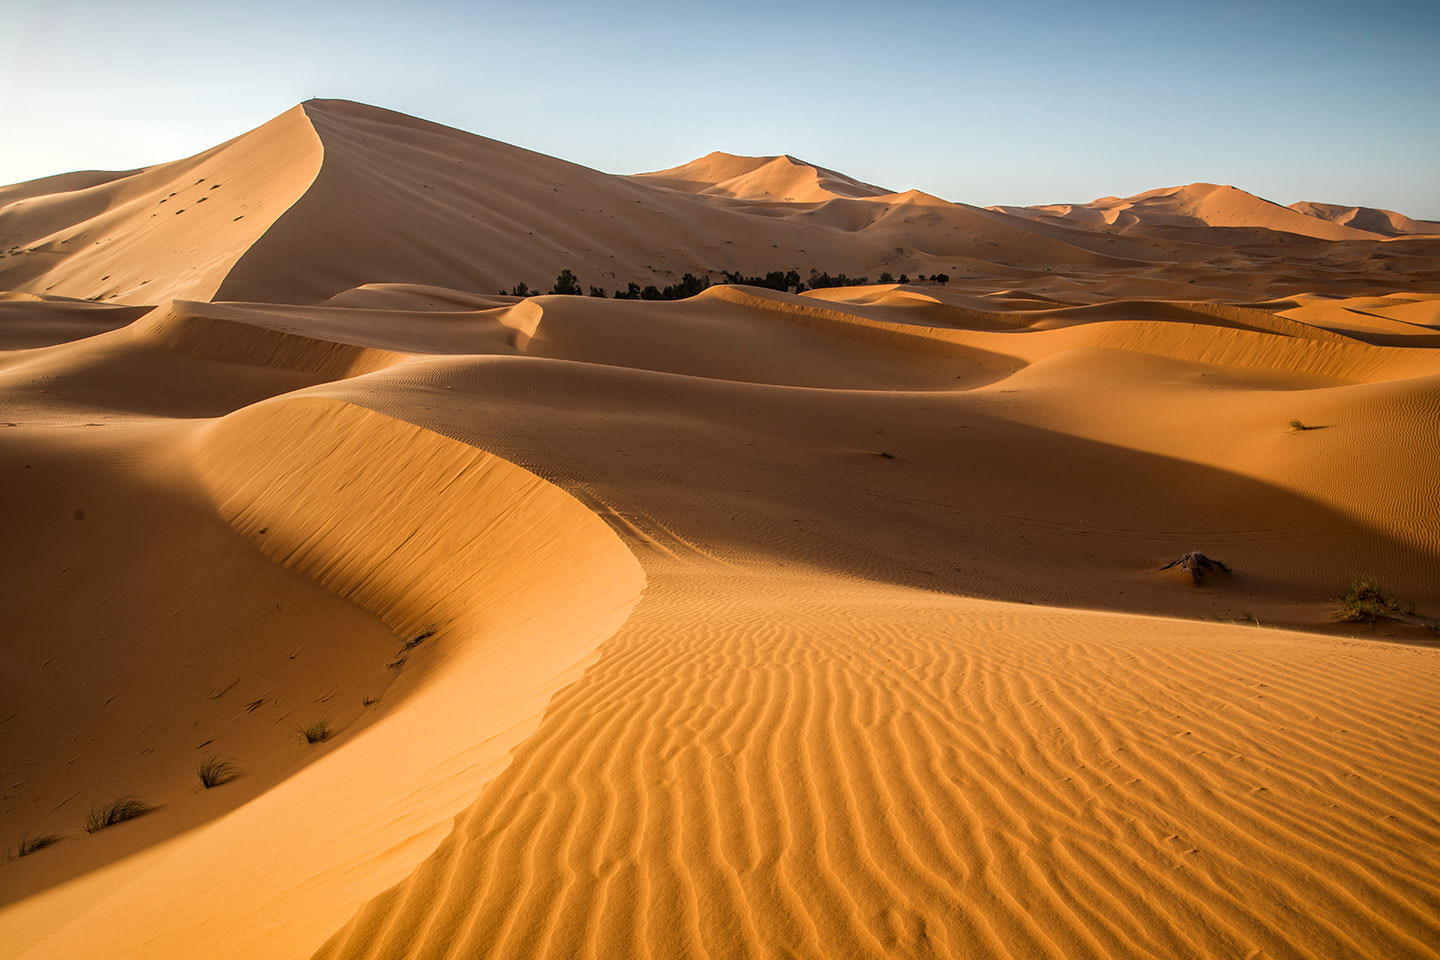 Sand dunes of the Sahara Desert in Morocco